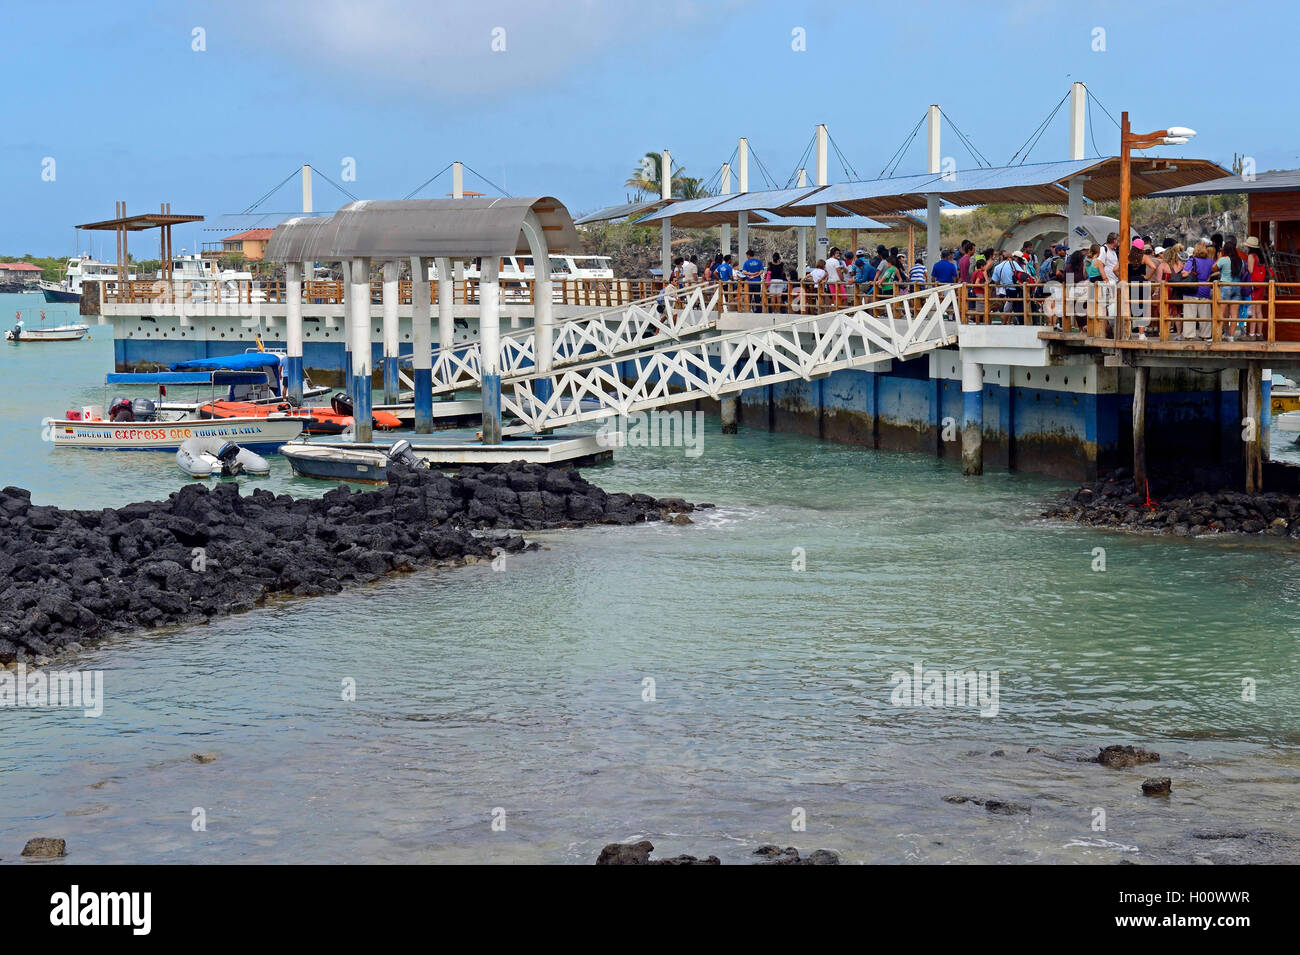 Hafen mit den Landungsbrücken und Kai für Kreuzfahrtschiffe, Ecuador, Galapagos Inseln, Santa Cruz, Puerto Ayora Stockfoto